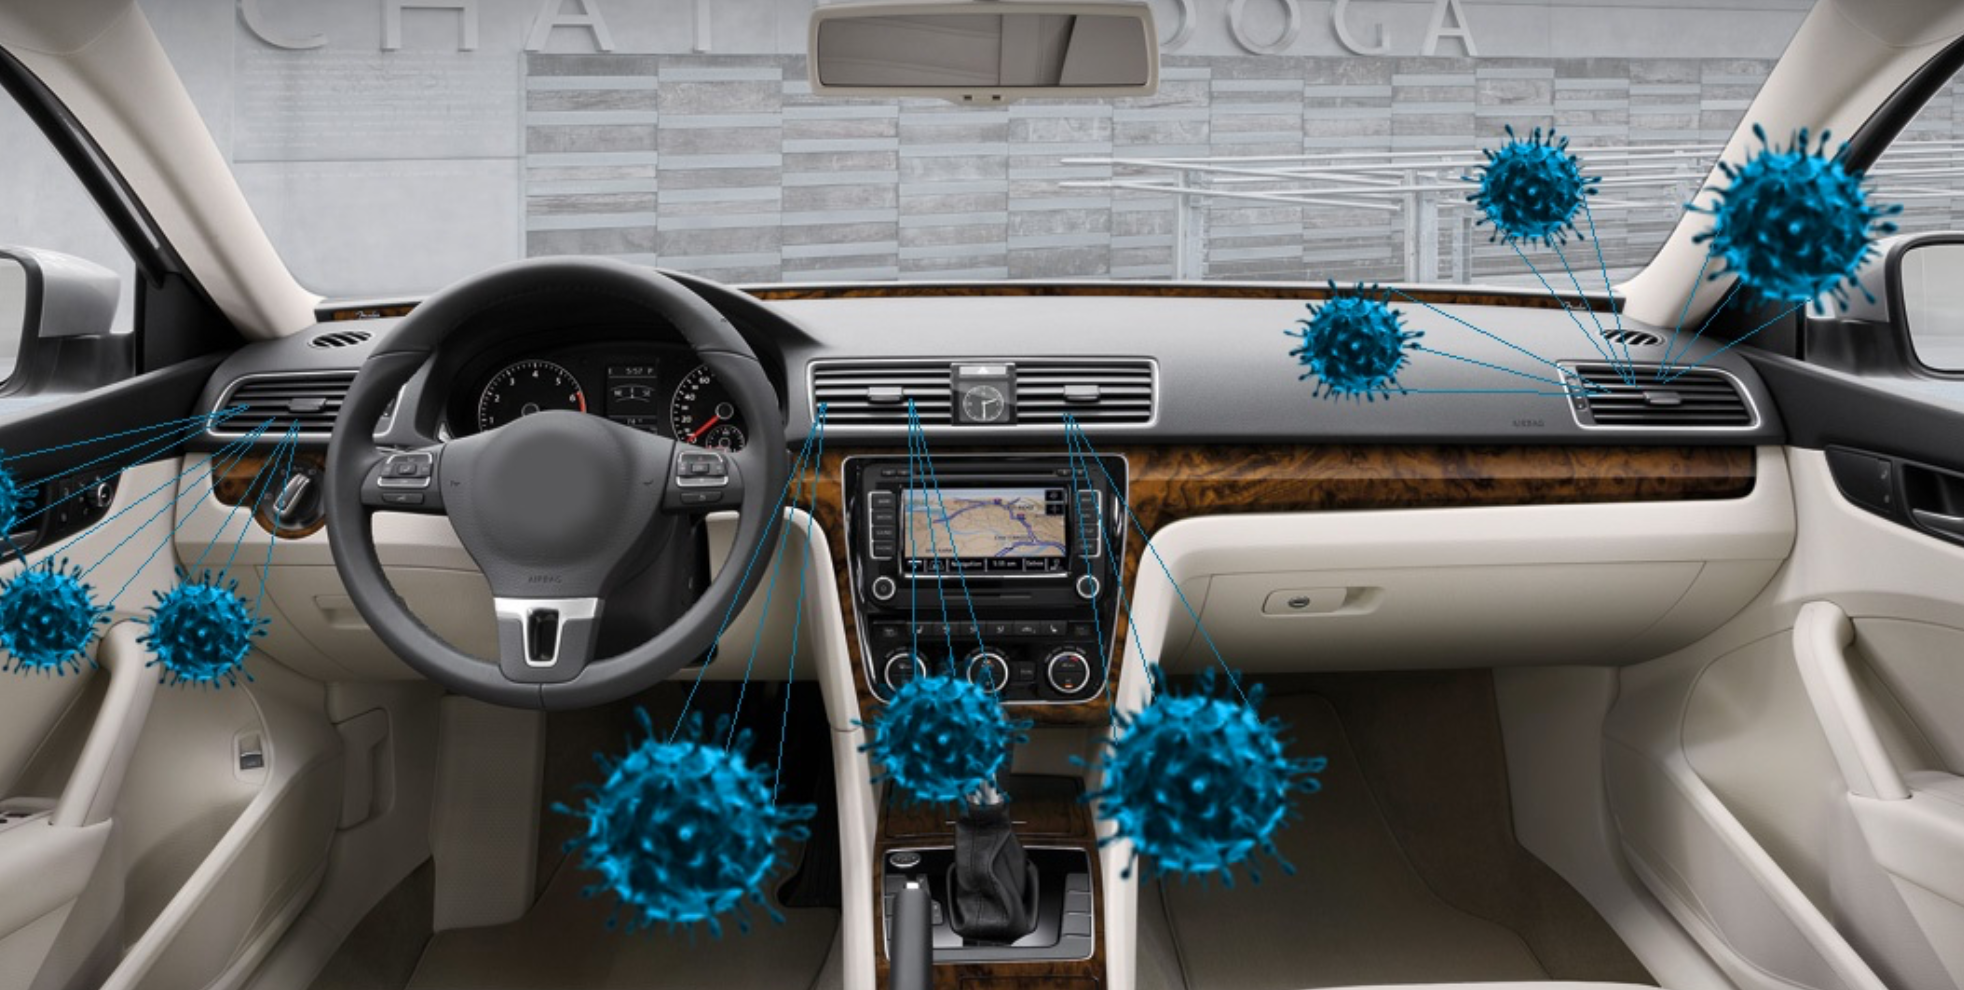 vizualizace toho kde se necházejí bakterie v interiéru auta